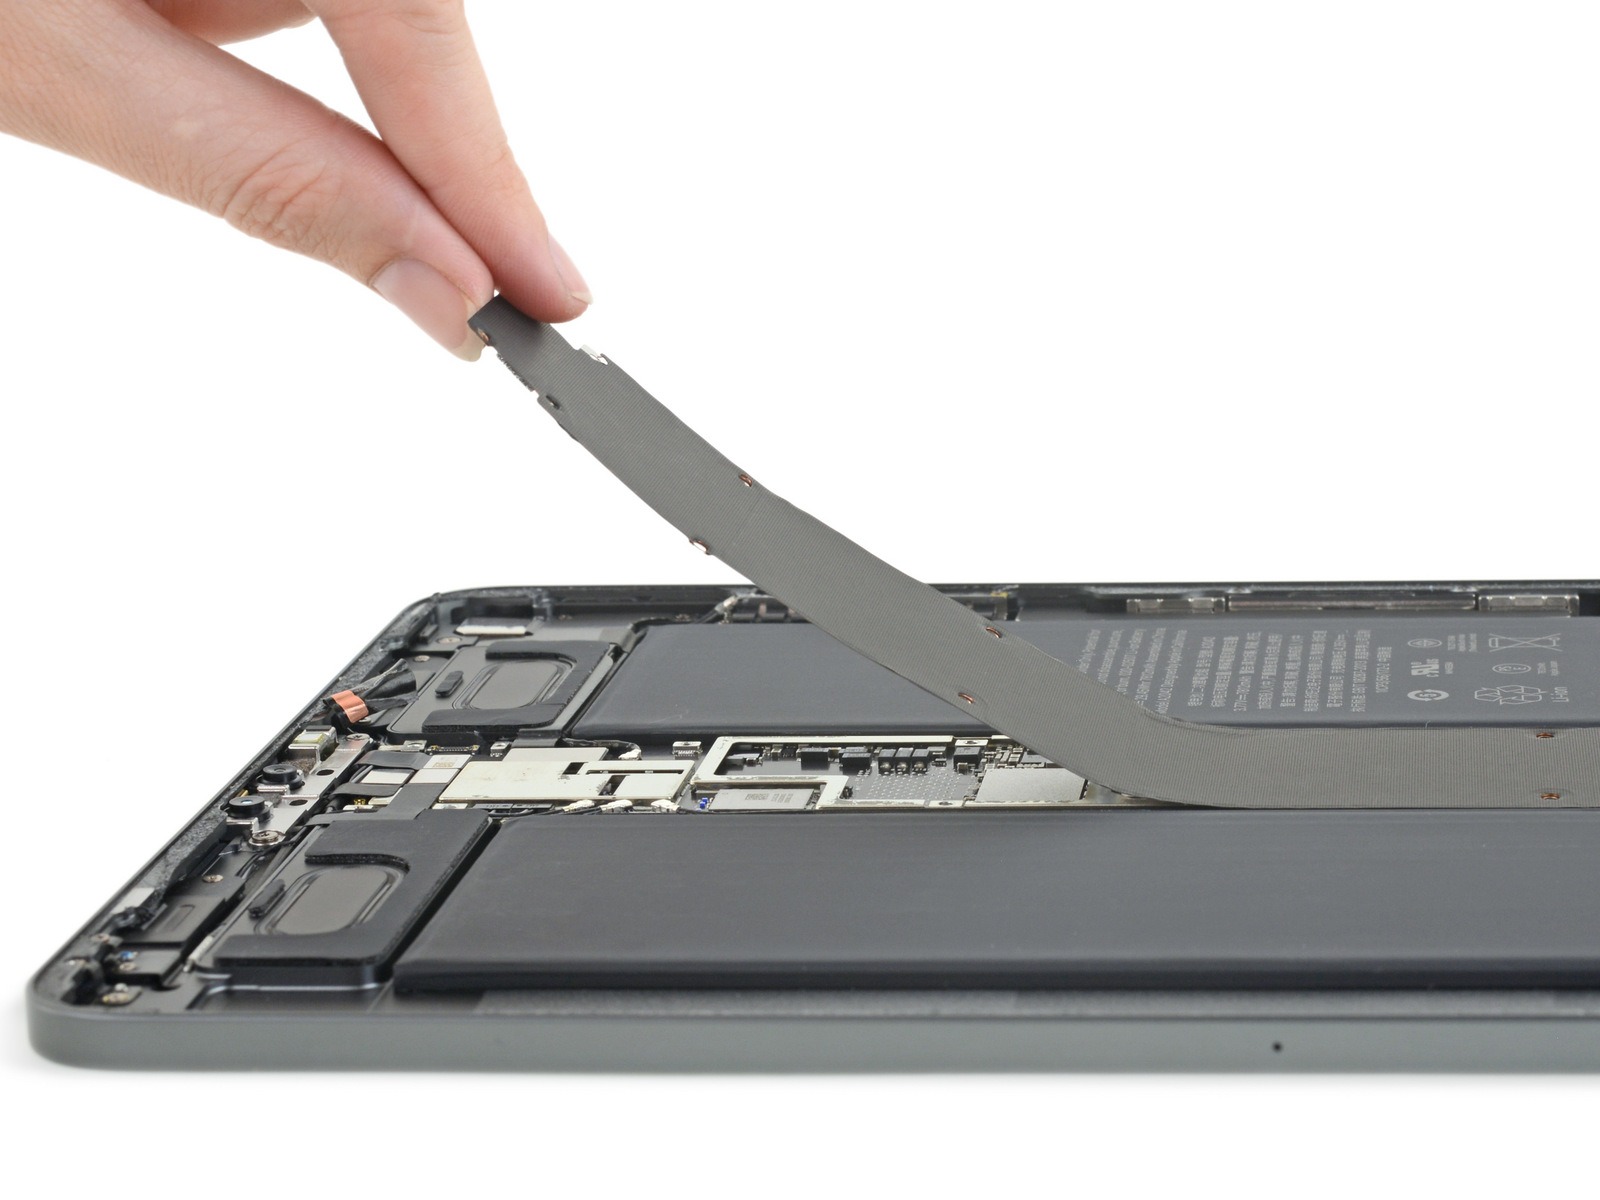 Réparation ordinateur portable - iFixit